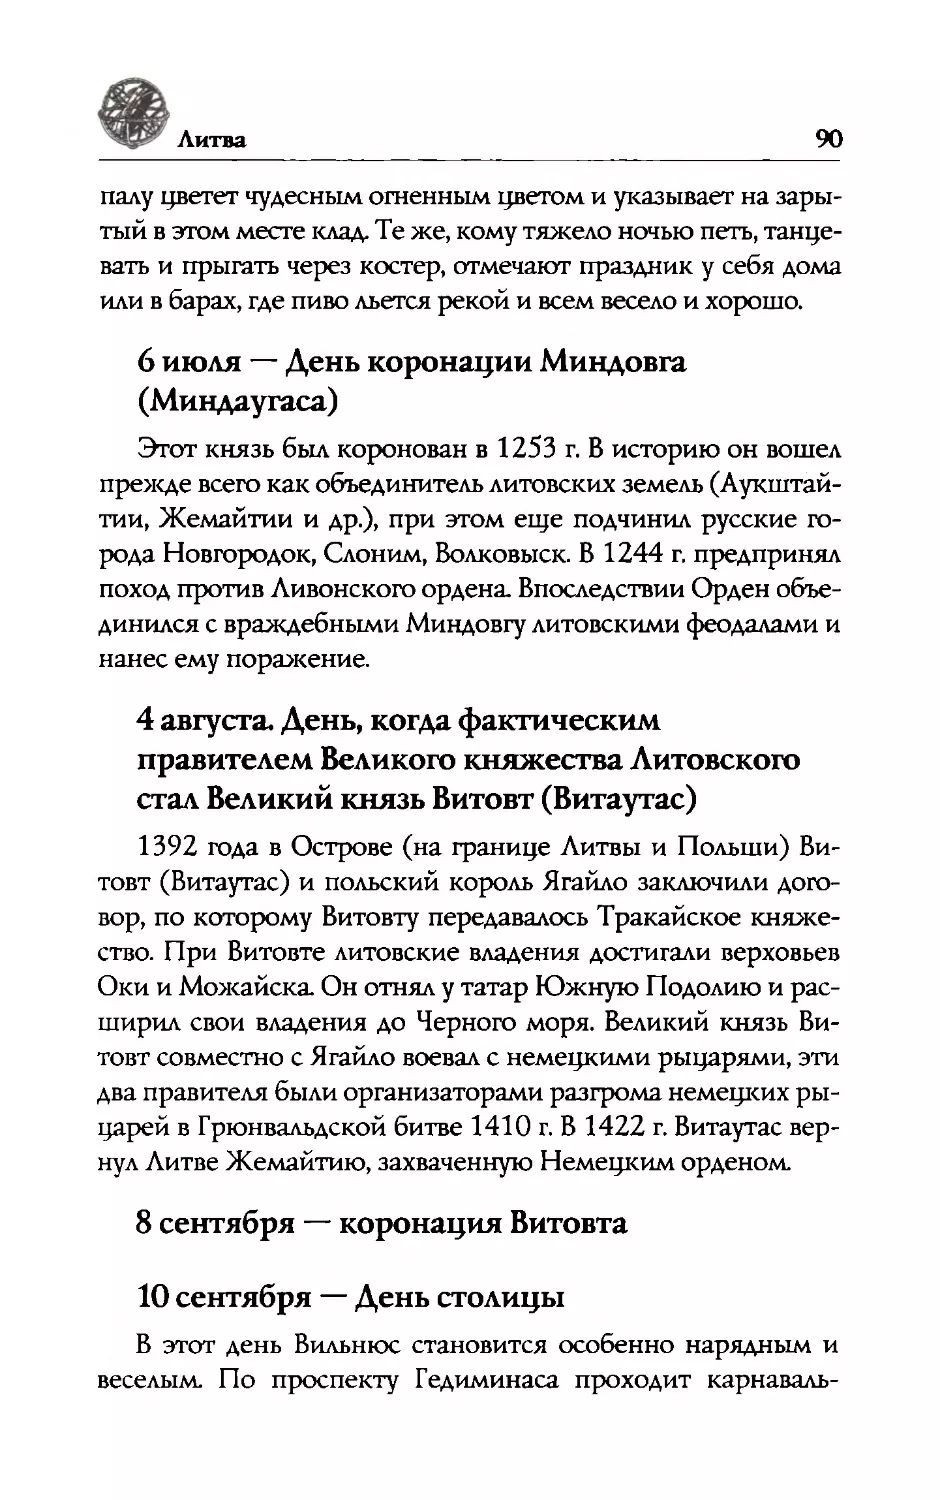 8  сентября  —  коронация  Витовта
10  сентября  —  День  столицы